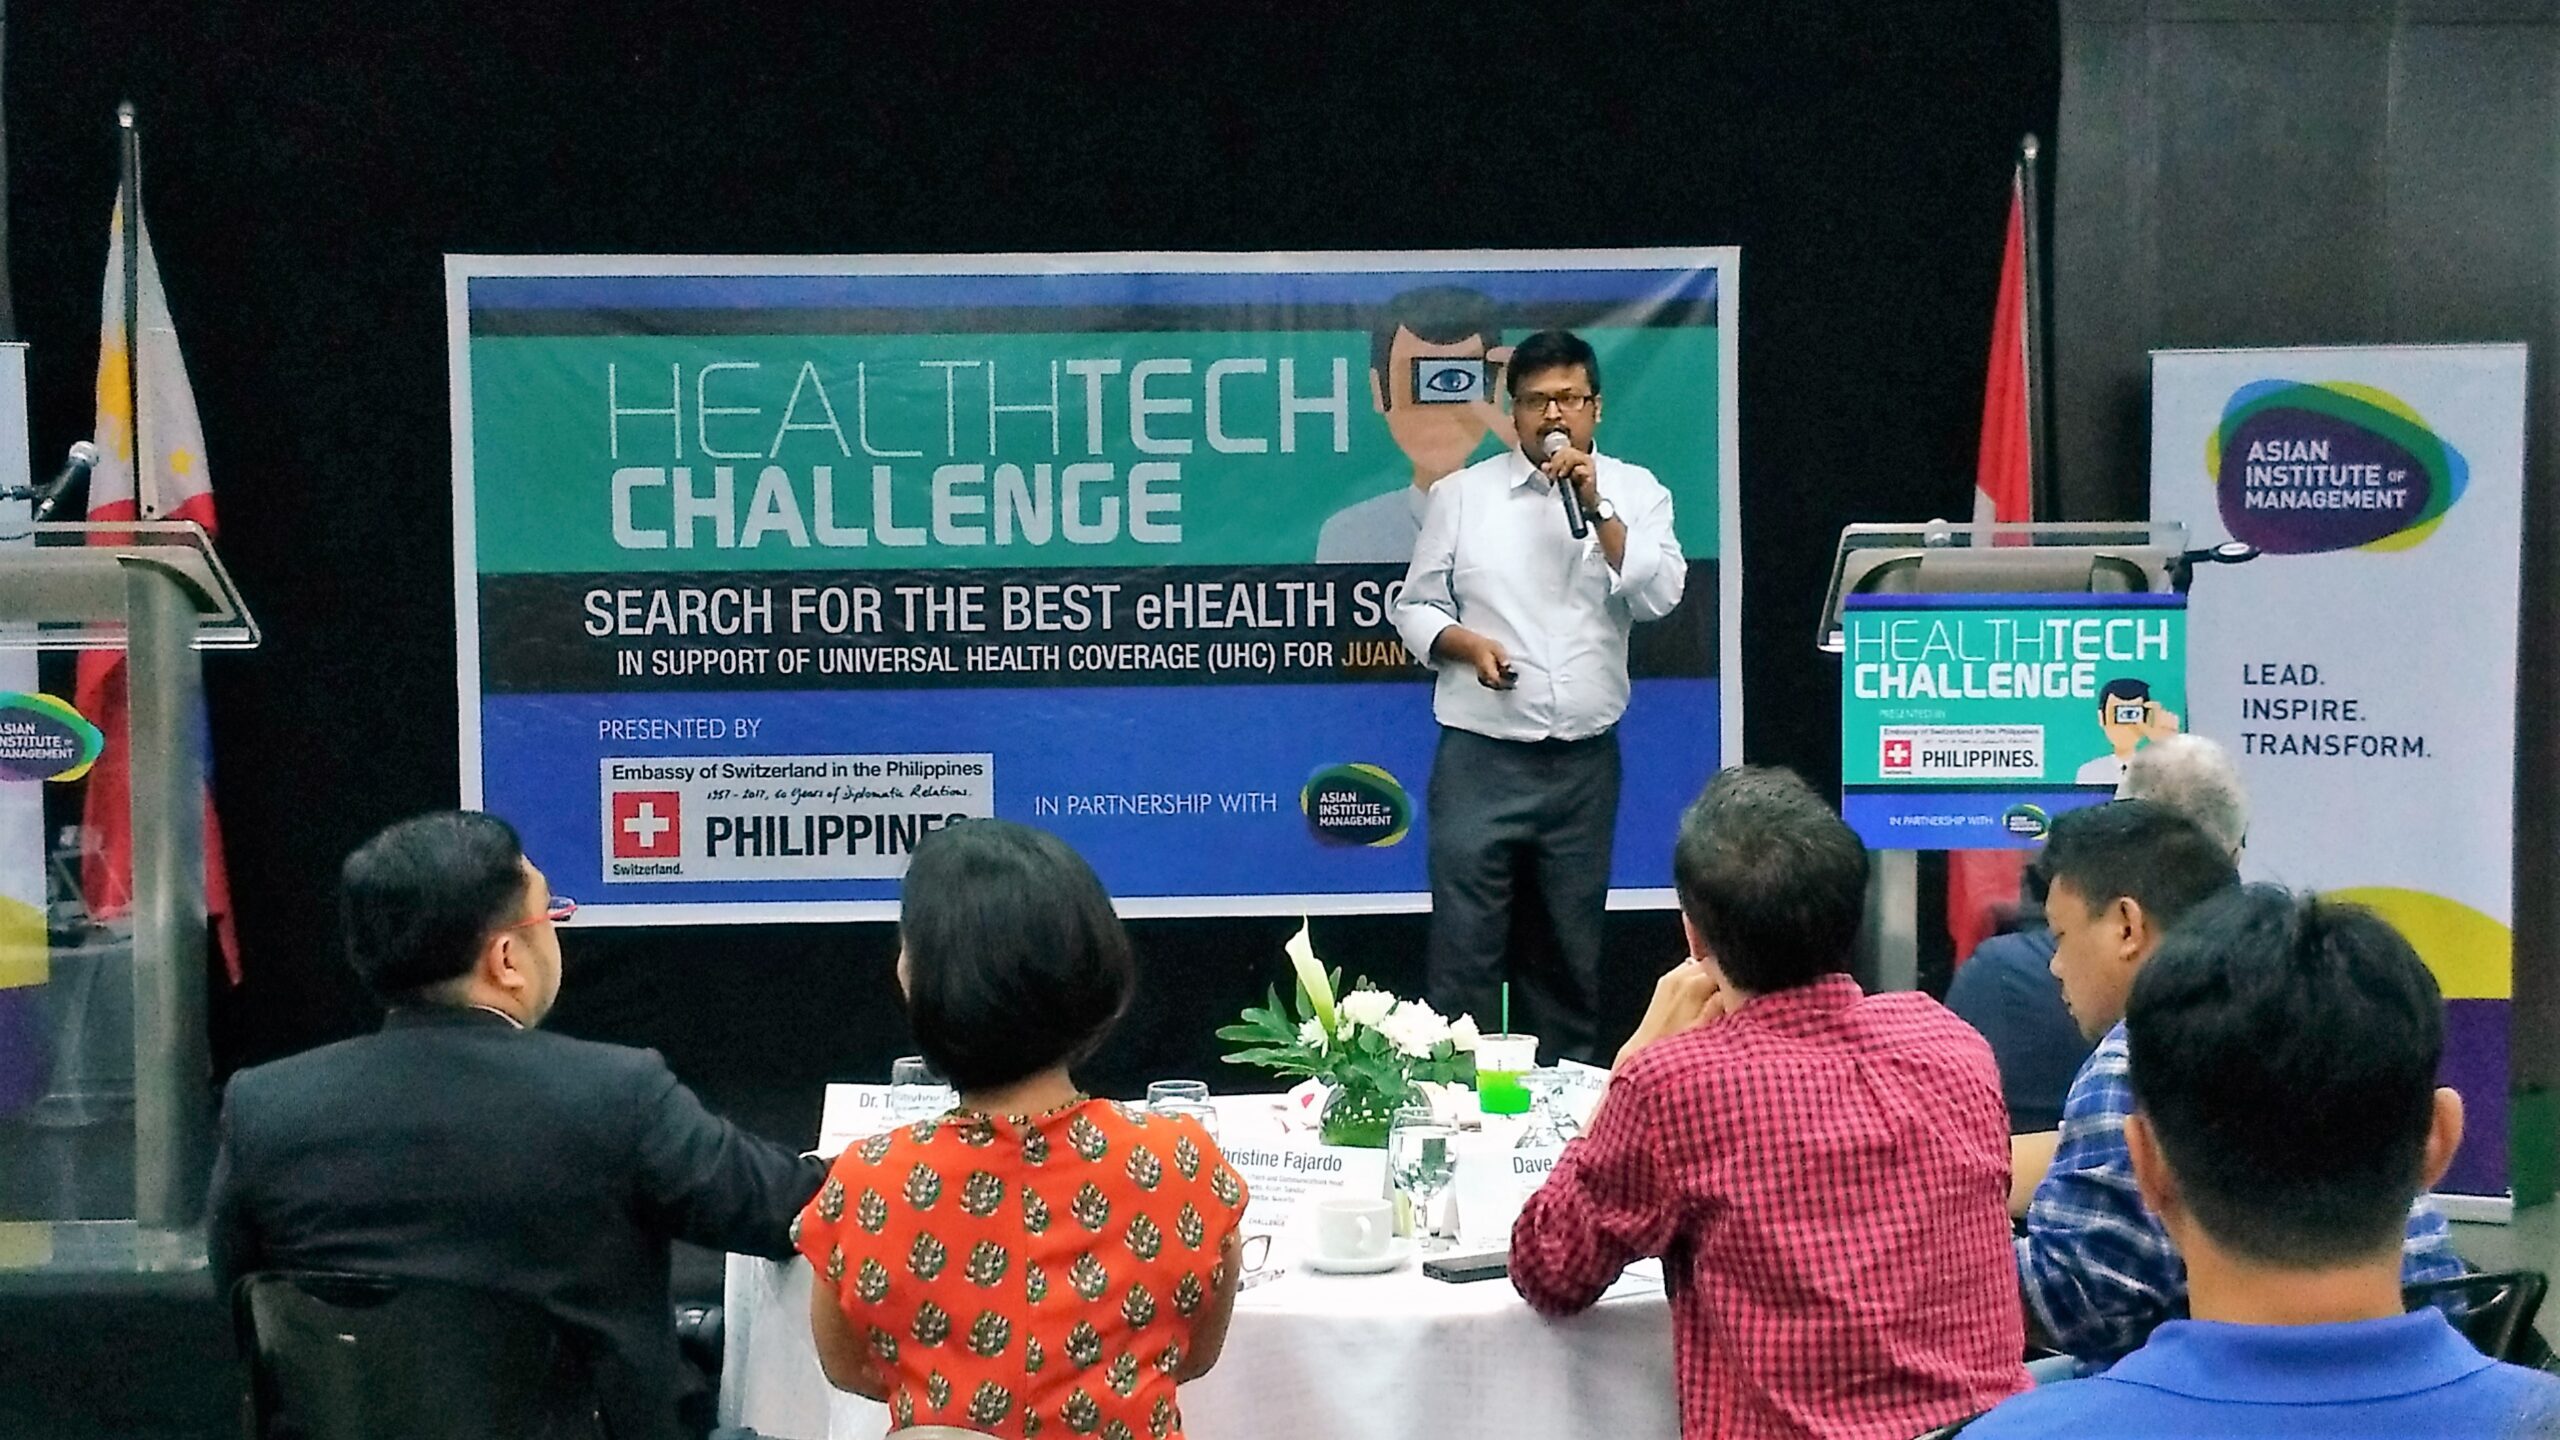 ‘Patient experience management platform’ wins PH HealthTech Challenge